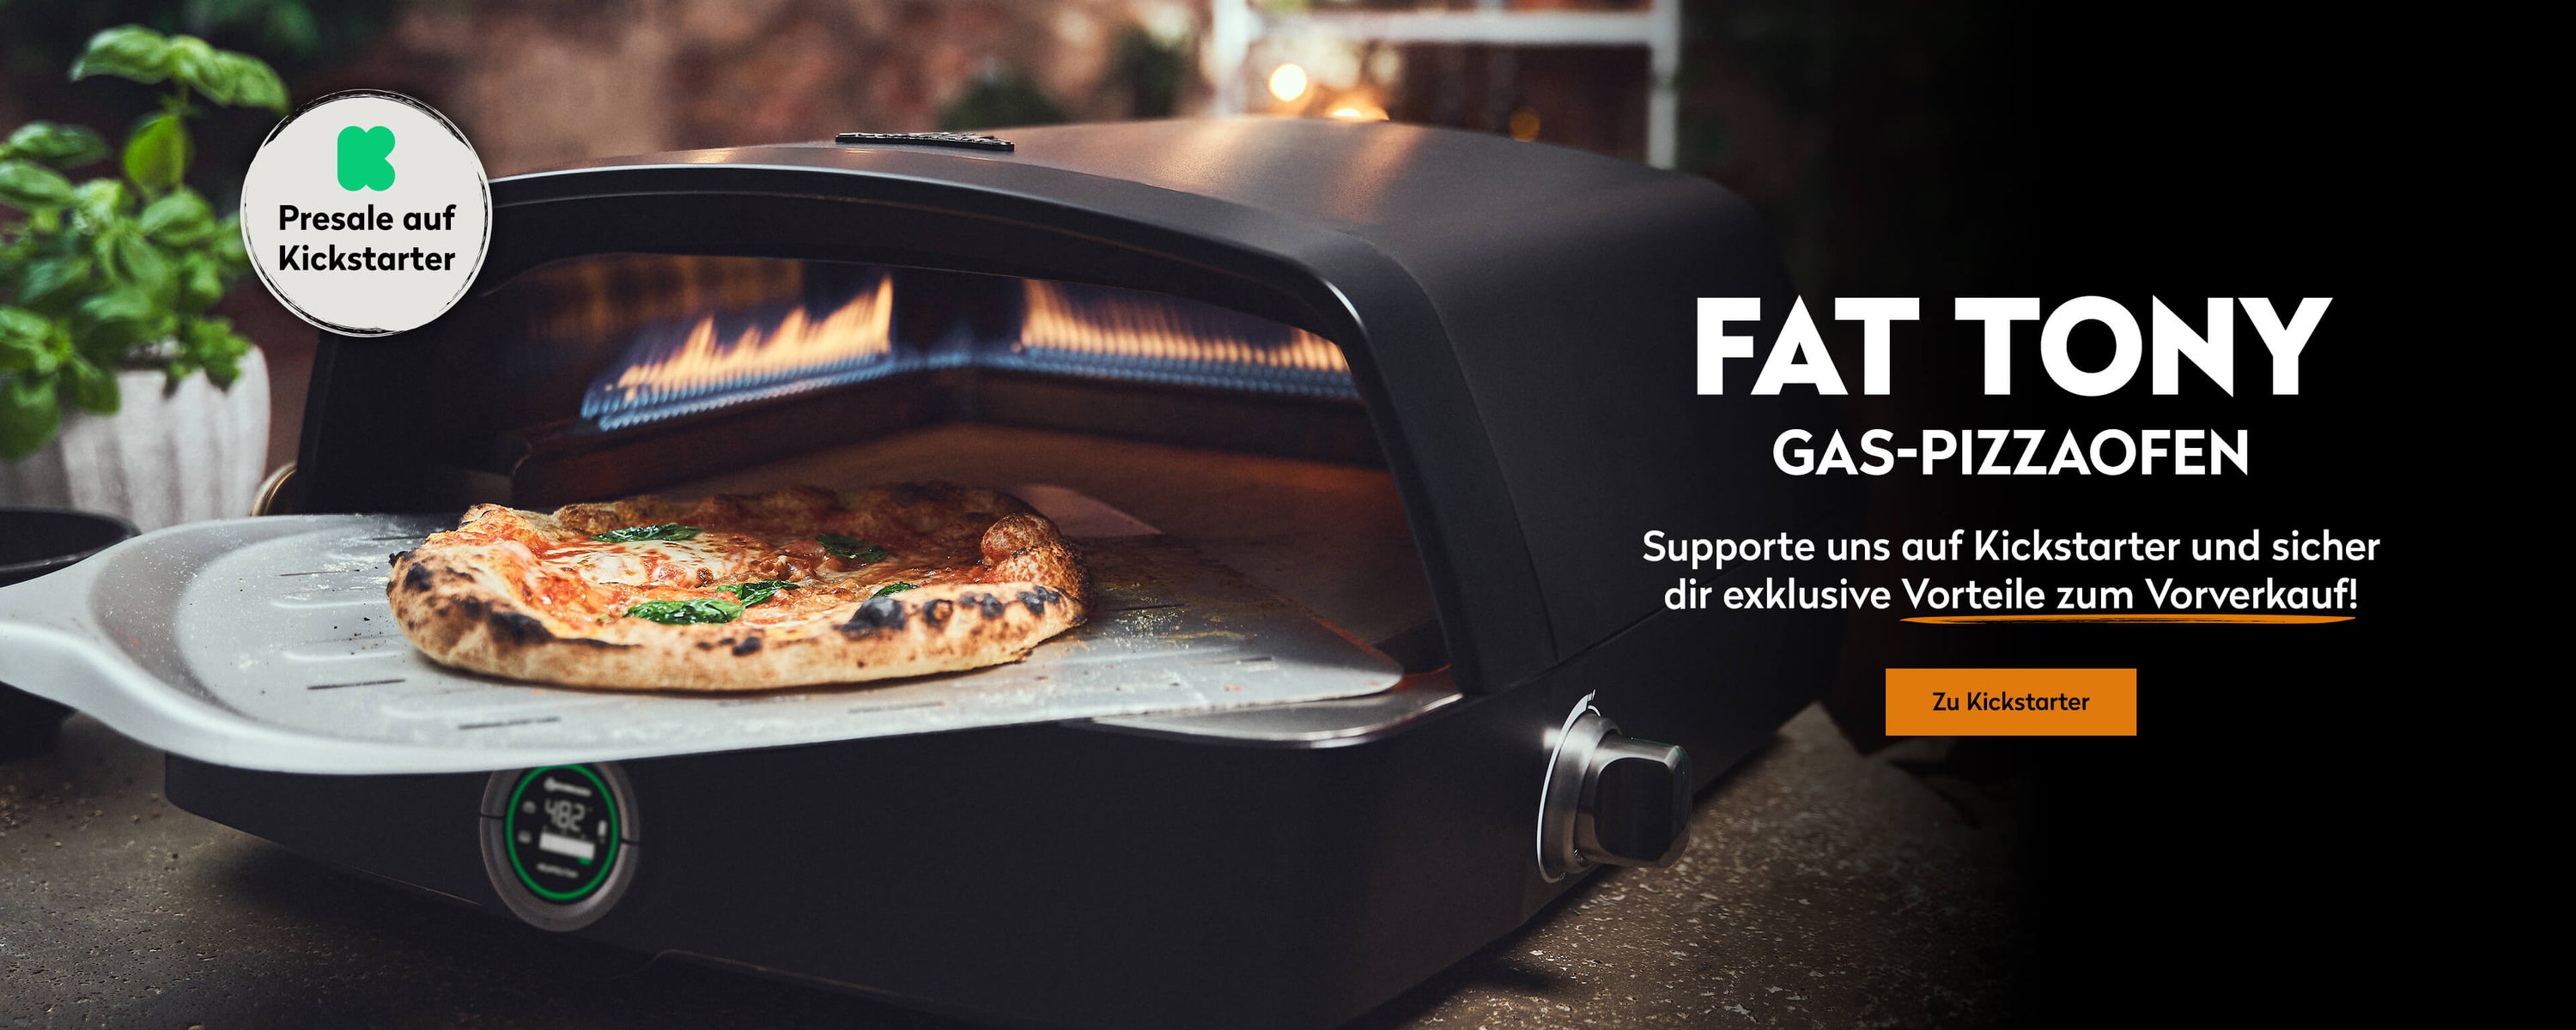 Fat TONY Gas-Pizzaofen – Supporte uns auf Kickstarter und sicher dir exklusive Vorteile zum Vorverkauf!